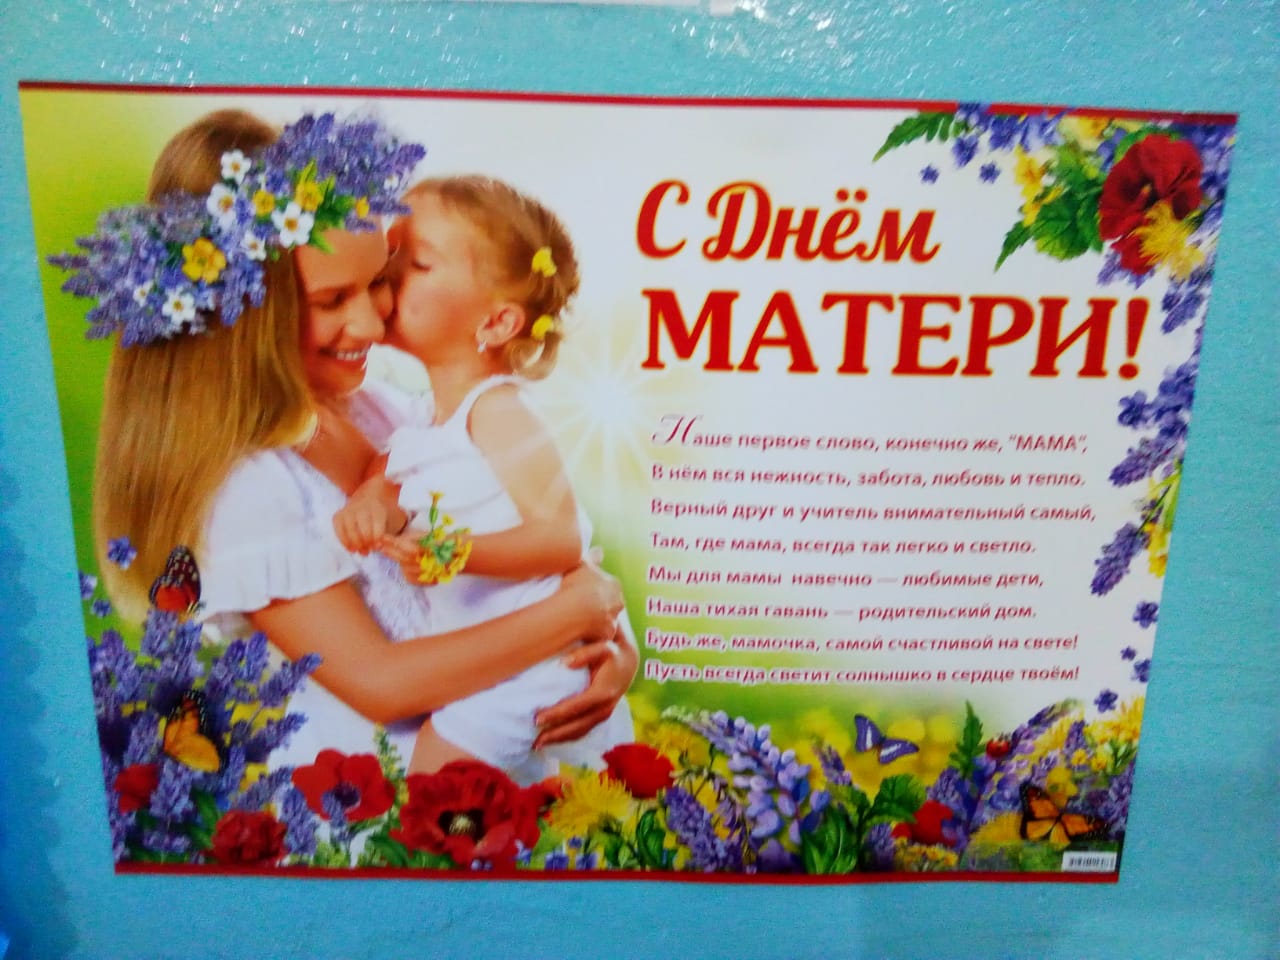 Мероприятия посвященные матери. День матери. С днём мамы поздравления. Плакат ко Дню матери. Праздник посвященный Дню матери.